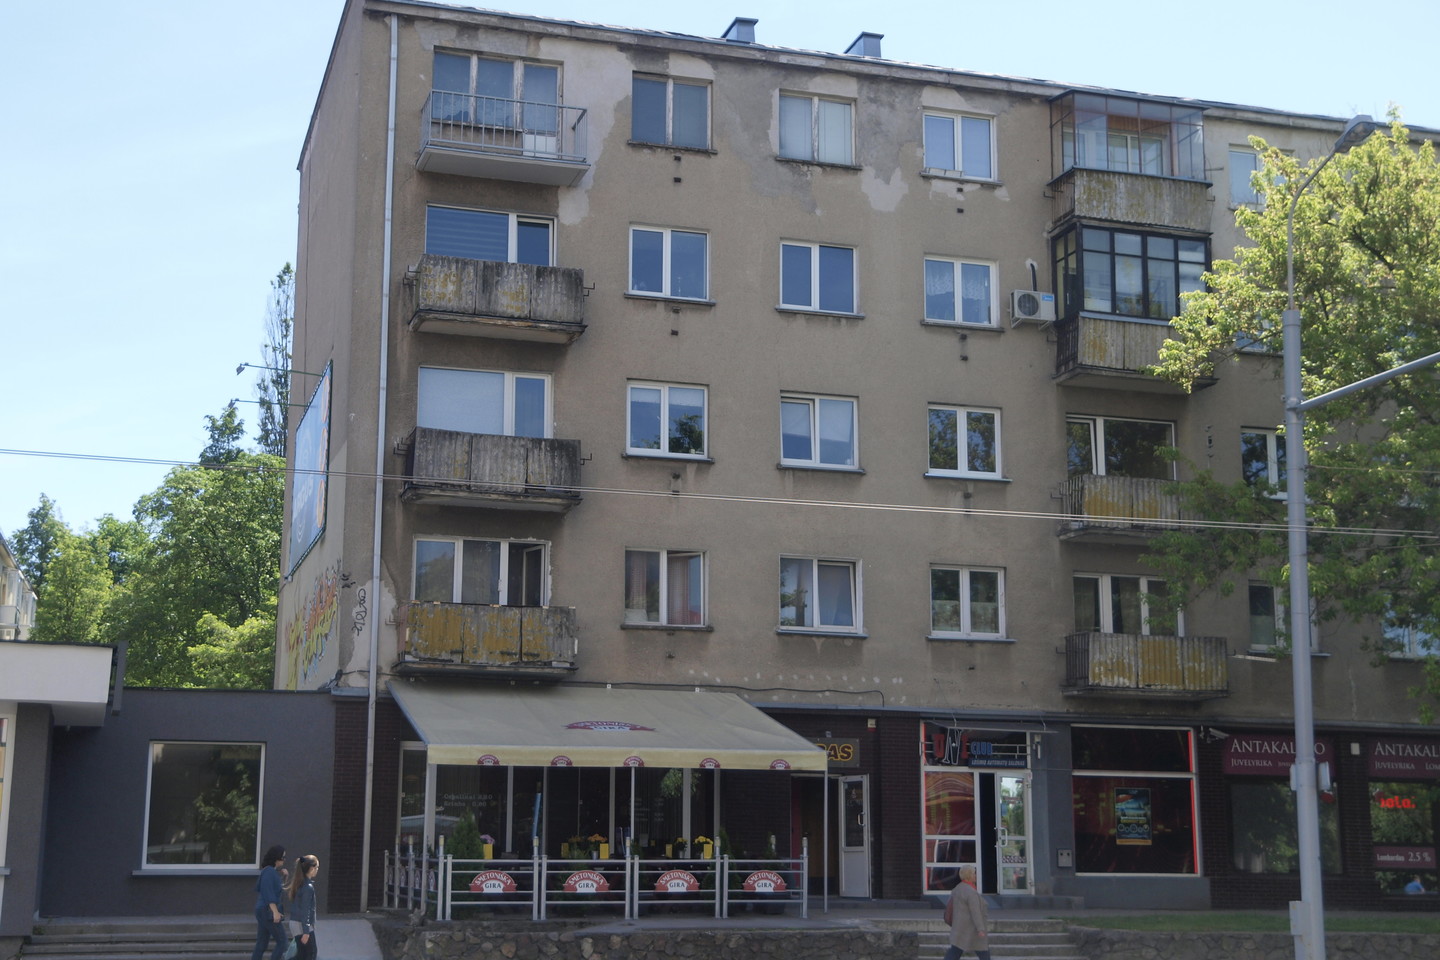  Balkonai su šiferio tvorele - išskirtinis sostinės Antakalnio gatvės bruožas.  <br> A.Srėbalienės nuotr. 